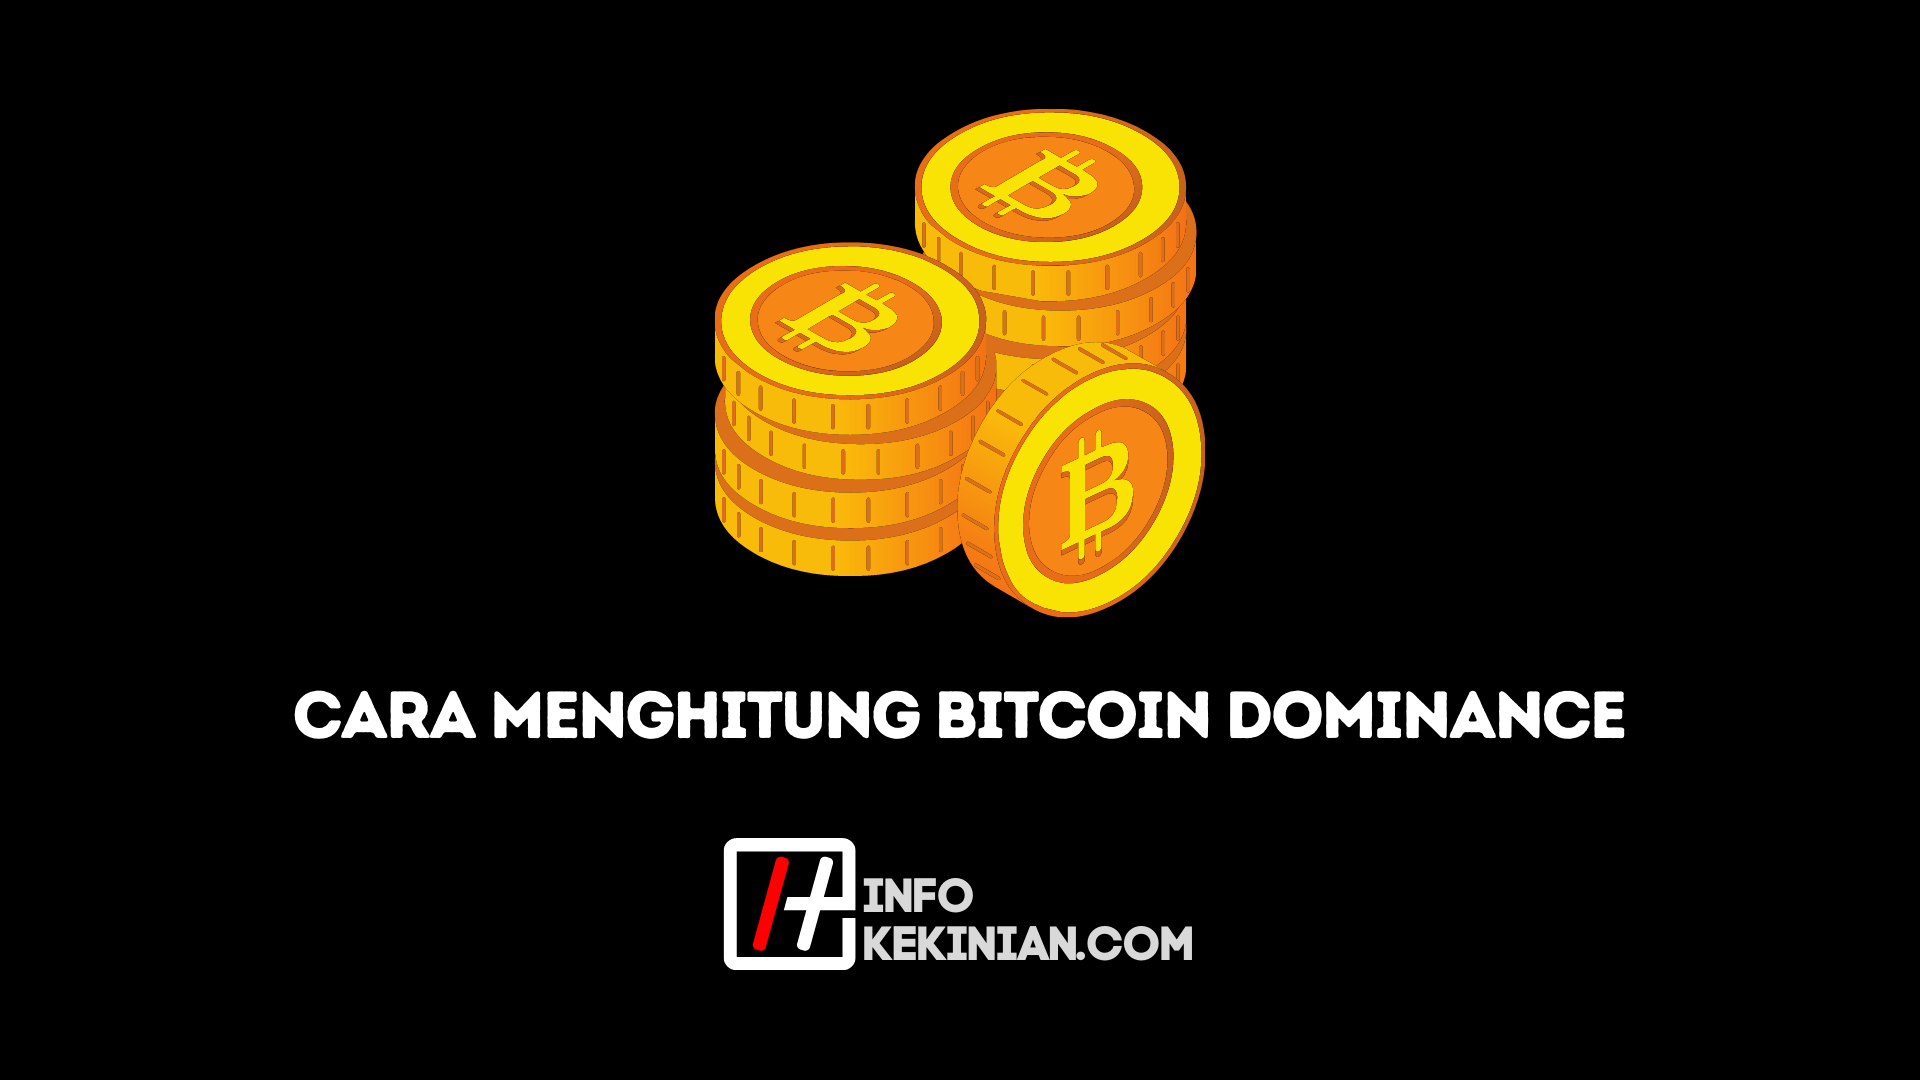 Bitcoin-Dominanz